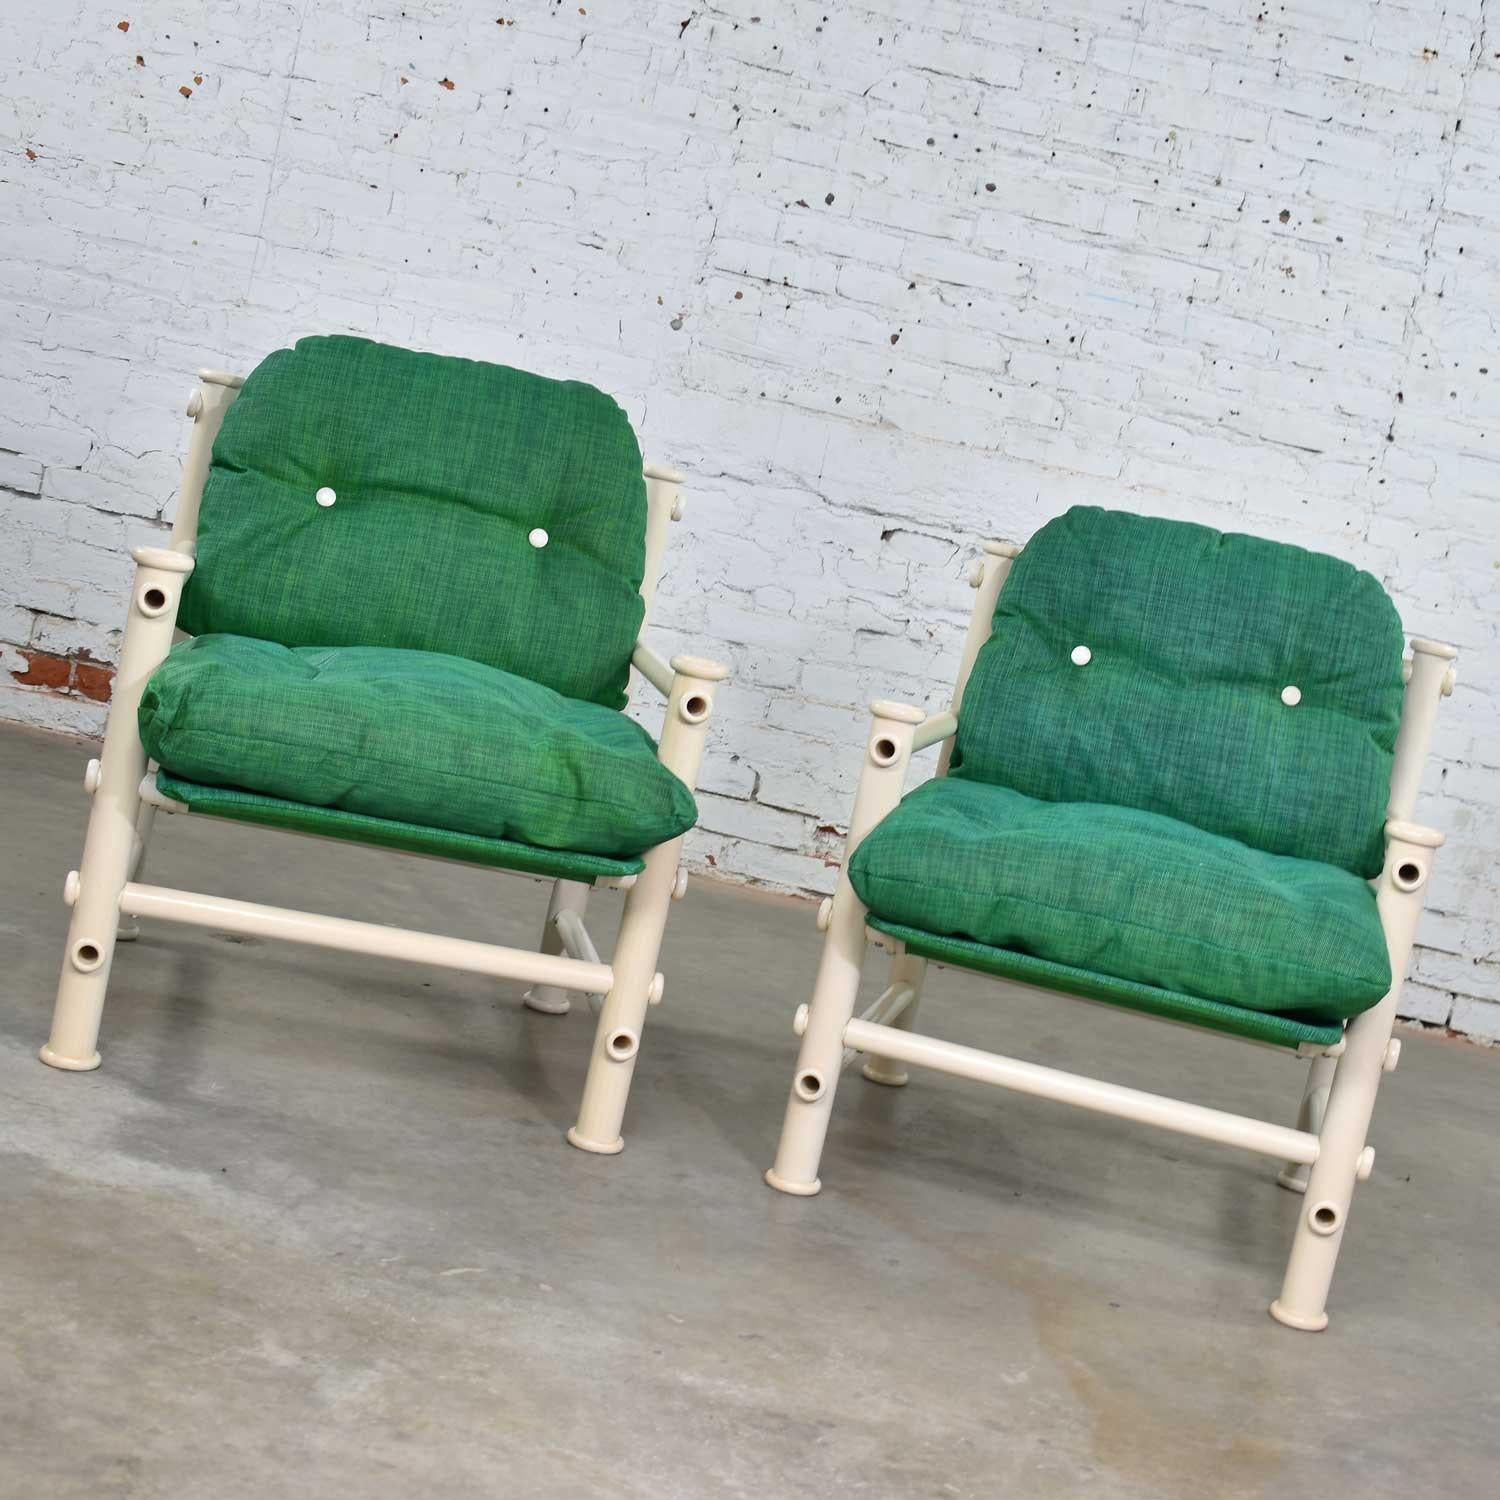 Paire de chaises longues d'extérieur Idyllwild en PVC blanc, amusantes et lumineuses, avec rembourrage en maille et élingue vert kelly, conçues par Jerry Johnson pour Landes Manufacturing Co. Ils sont en bon état vintage. Il y a des signes de